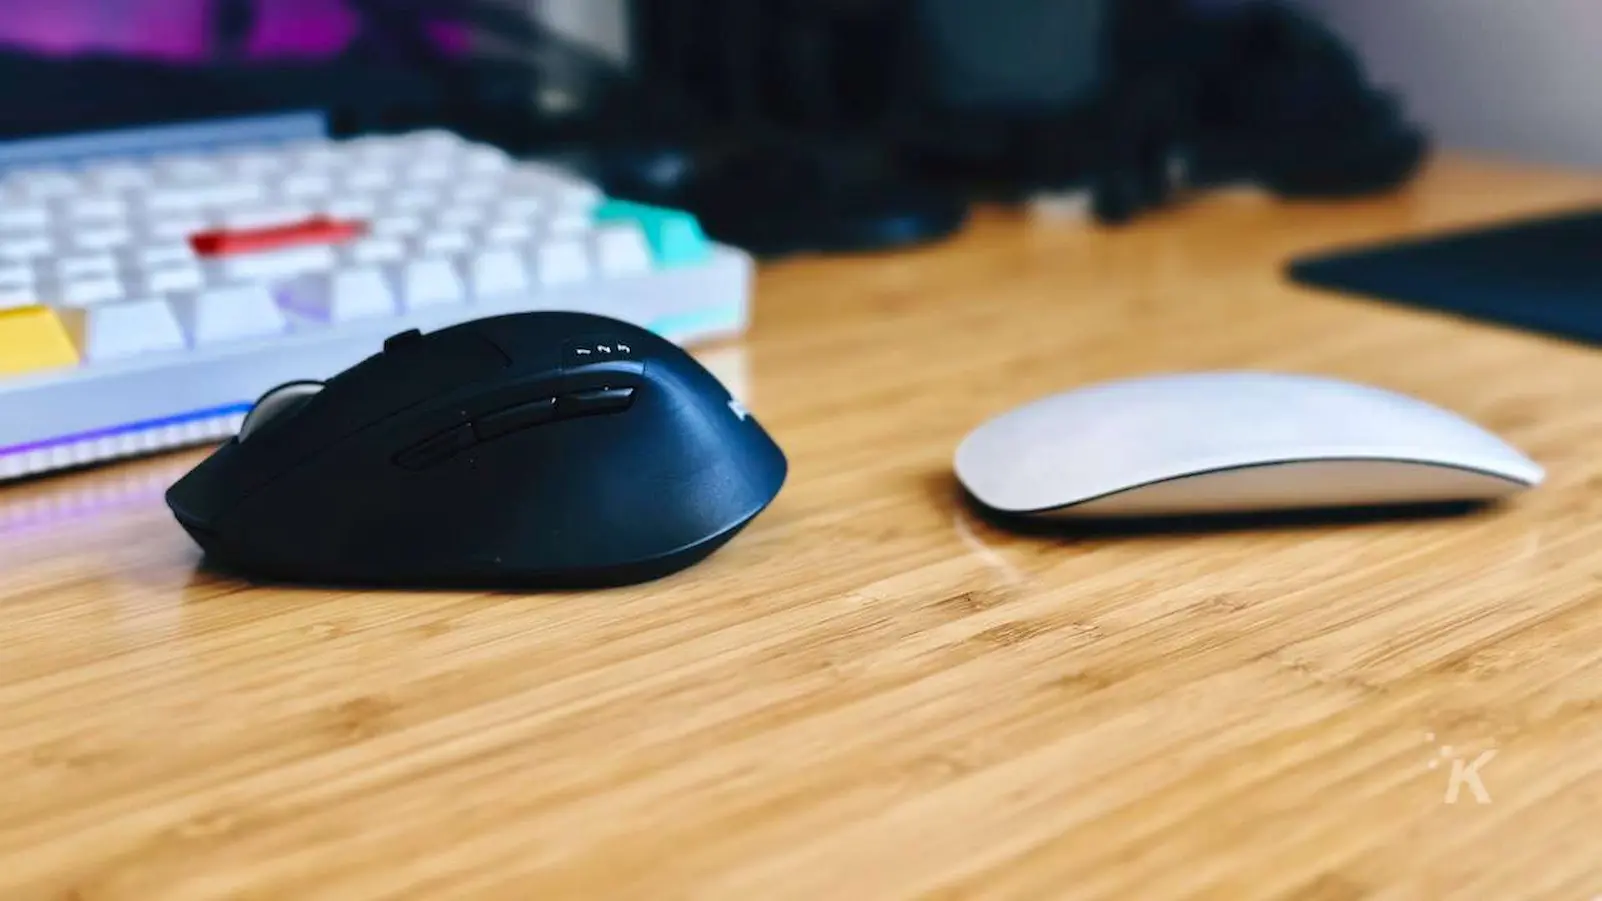 صورة جنبًا إلى جنب لـ Apple Magic Mouse مقابل Logitech M720 Mouse على مكتب المكتب